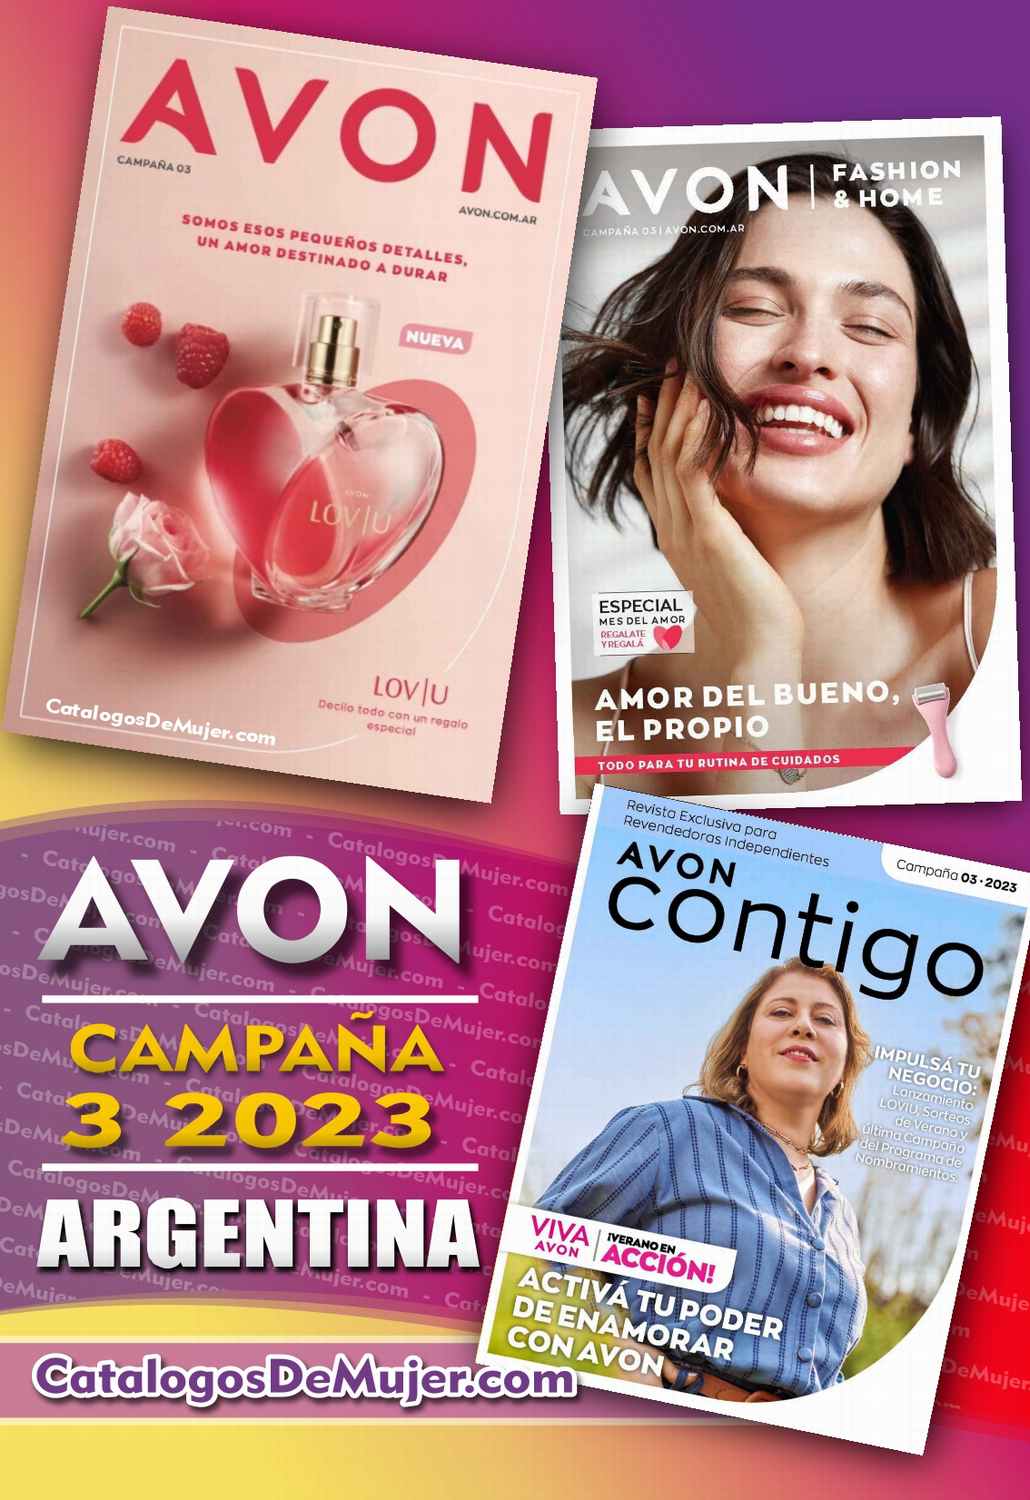 Catalogo Avon Campaña 3 Argentina 2023